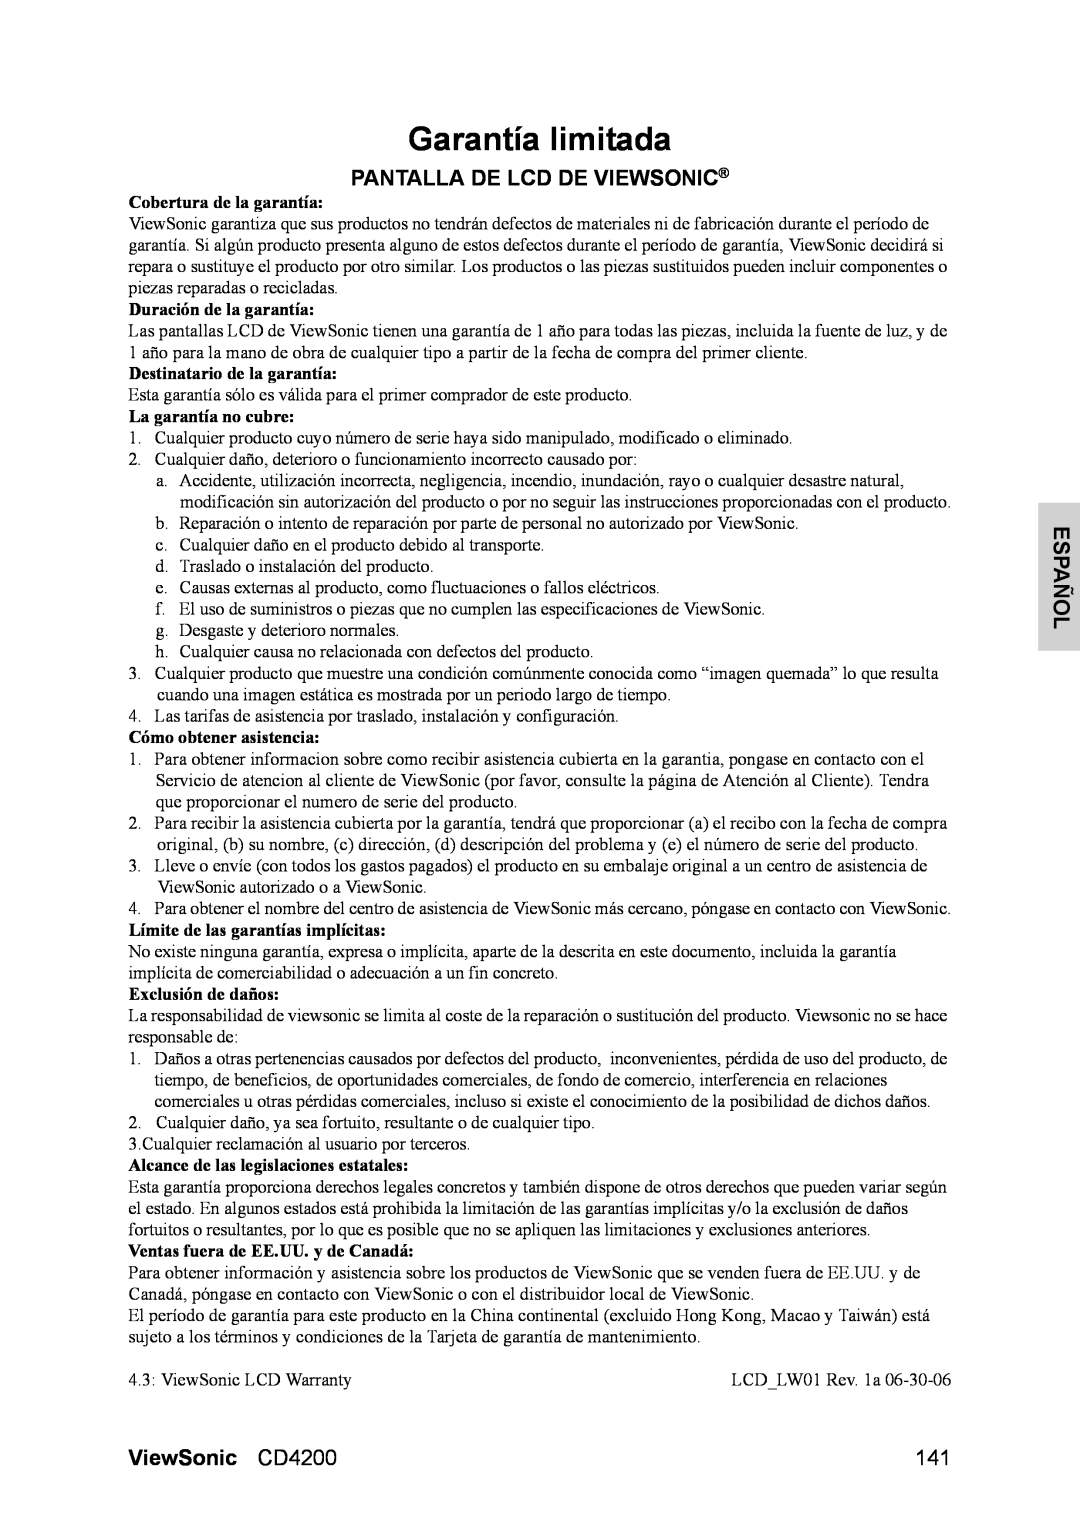 ViewSonic manual Garantía limitada, Pantalla De Lcd De Viewsonic, Español, ViewSonic CD4200, Cobertura de la garantía 